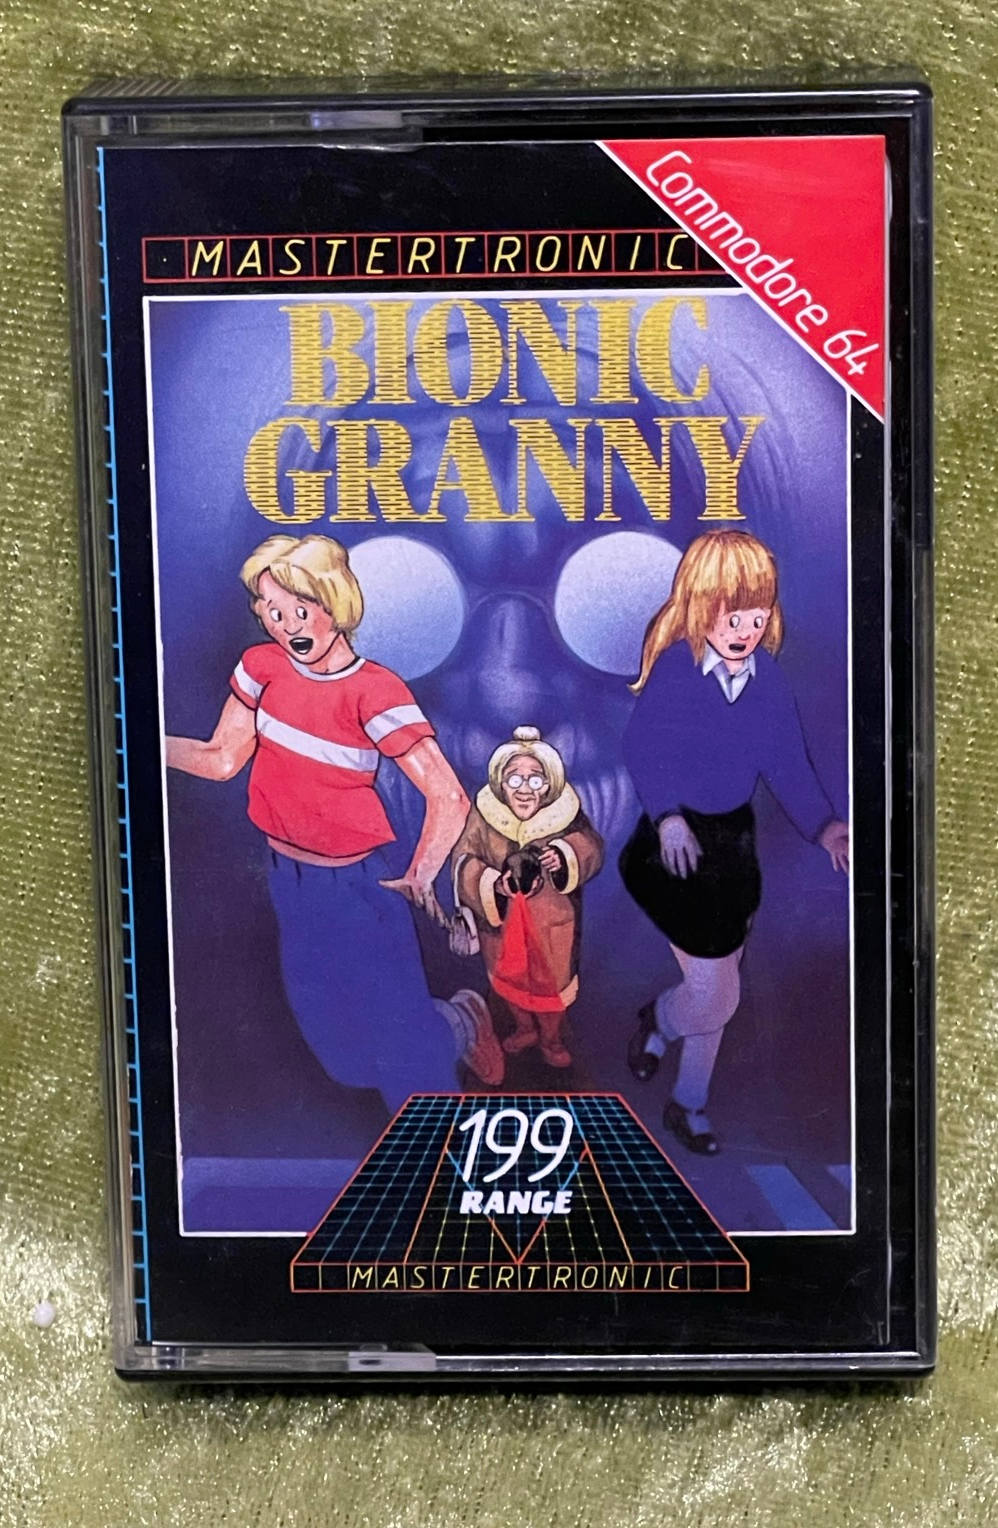 Bionic Granny